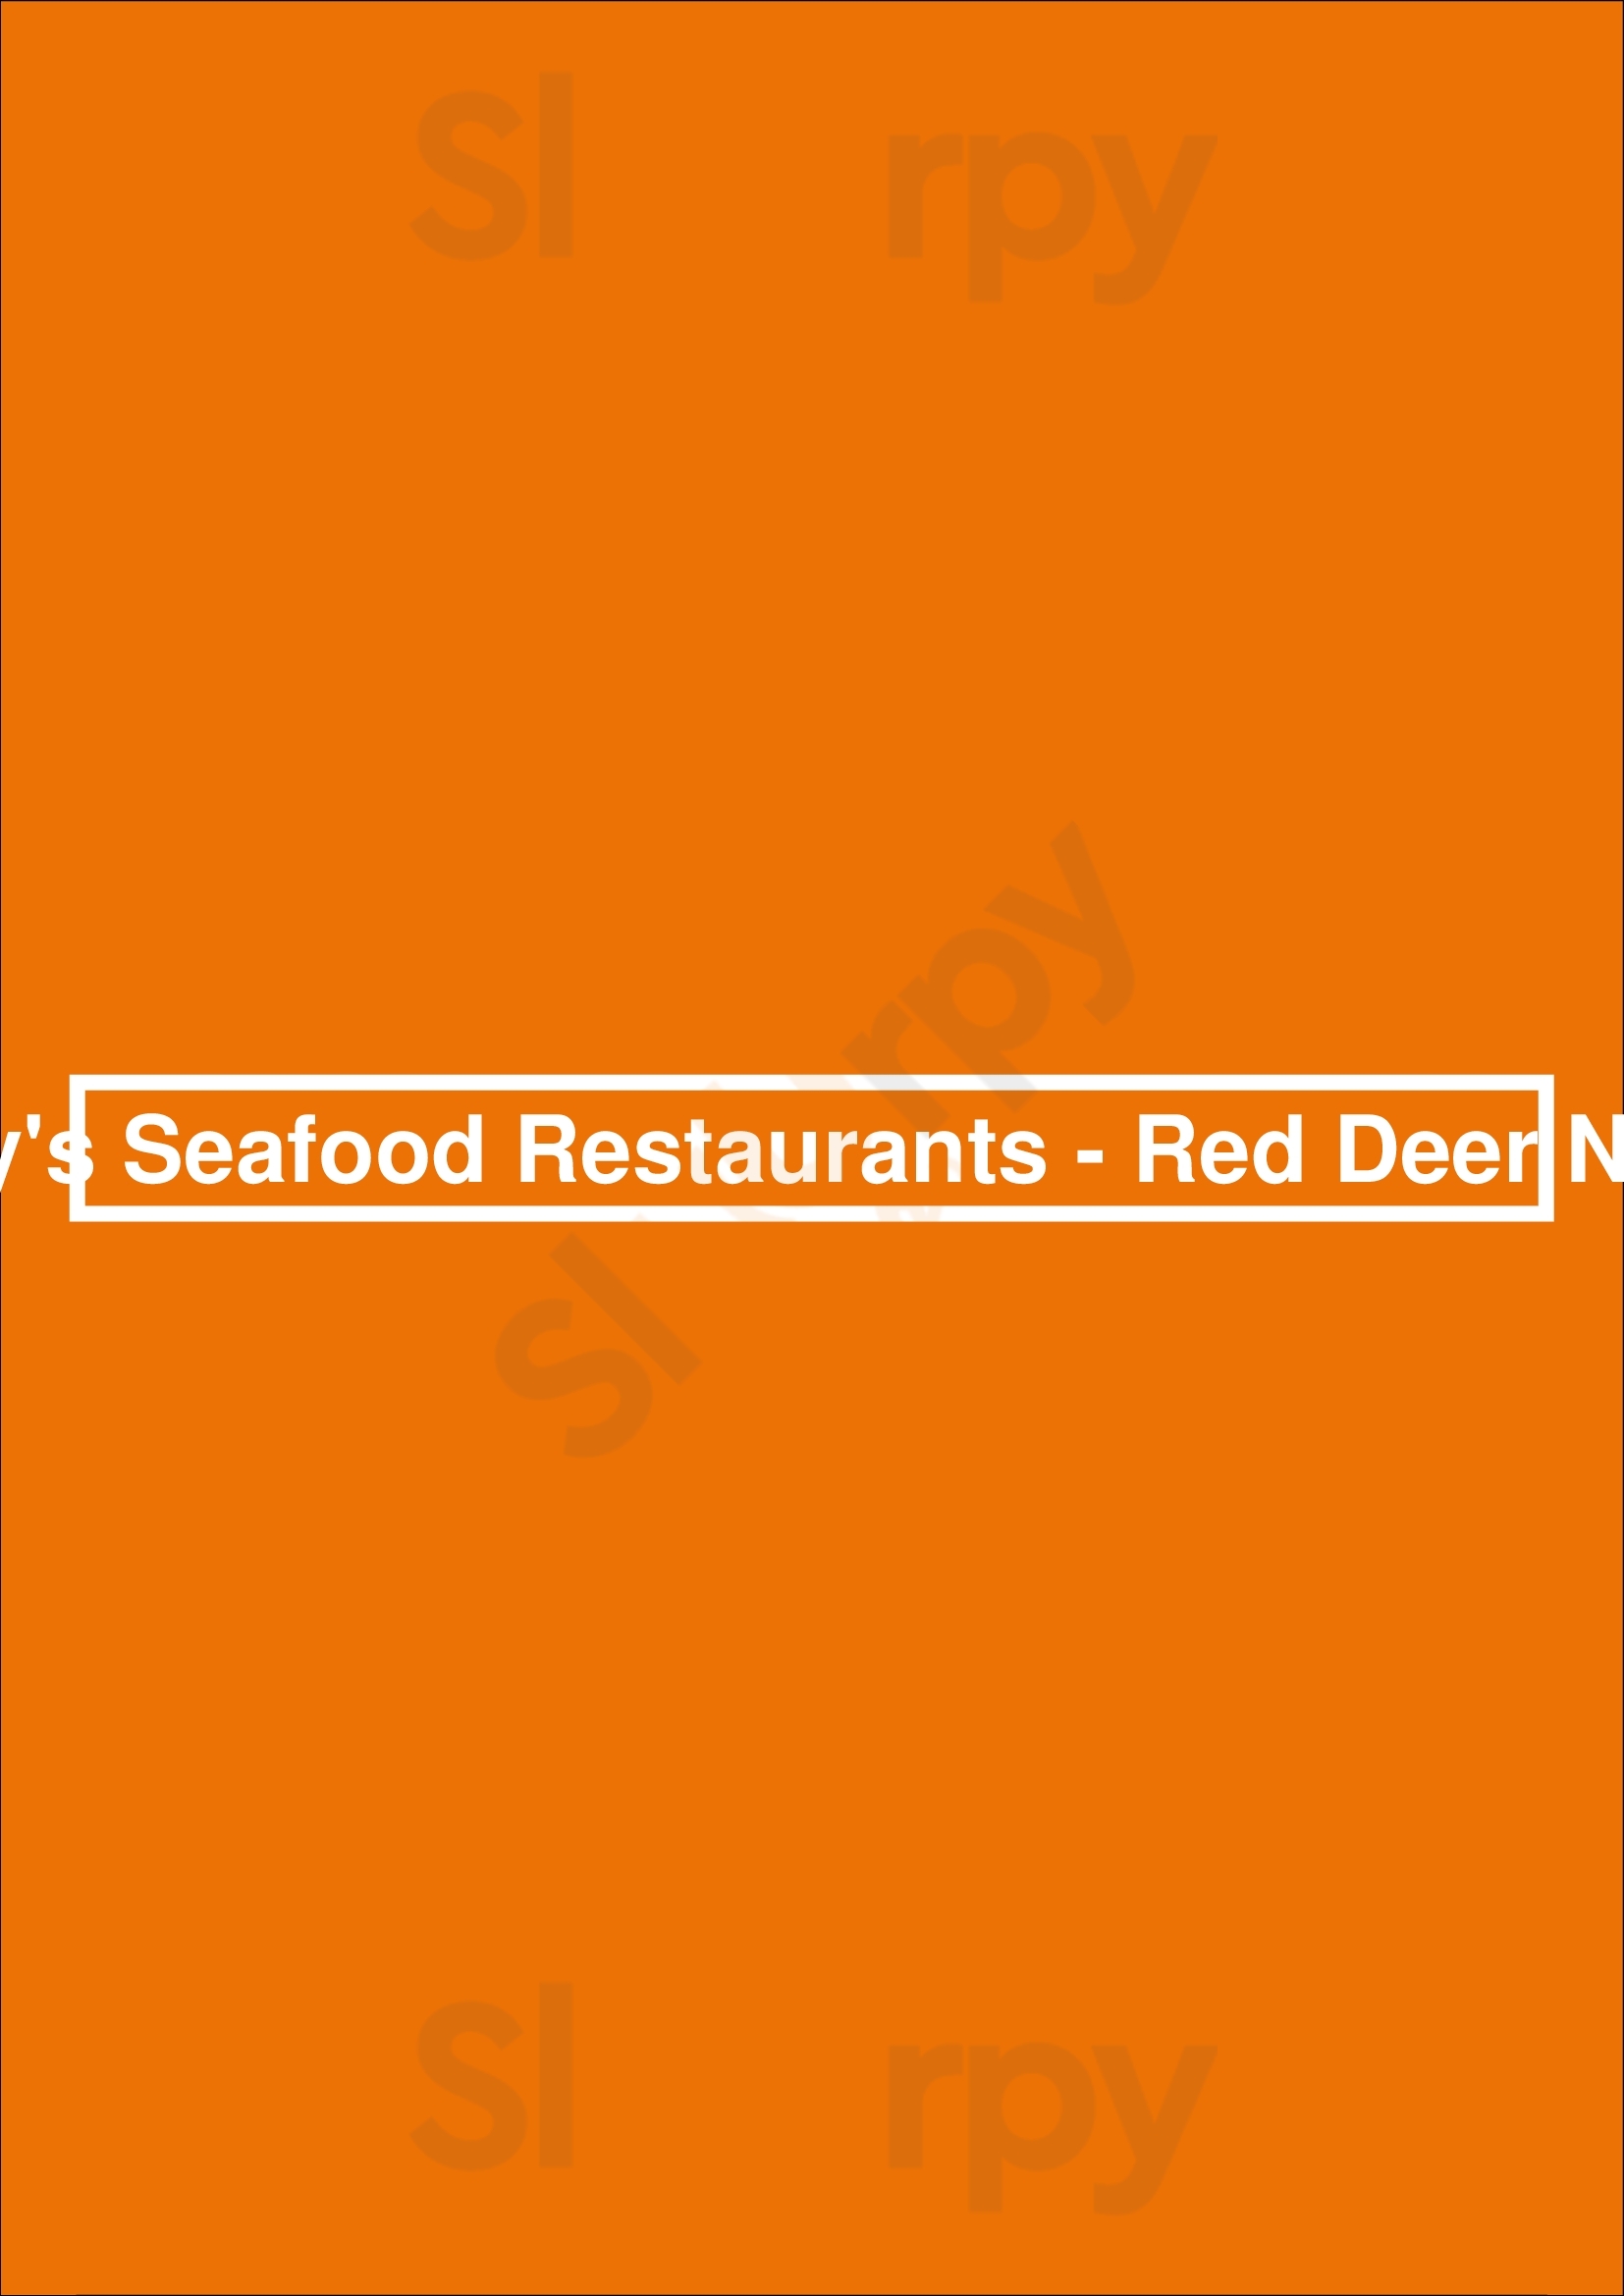 Joey's Seafood Restaurants - Red Deer North Red Deer Menu - 1